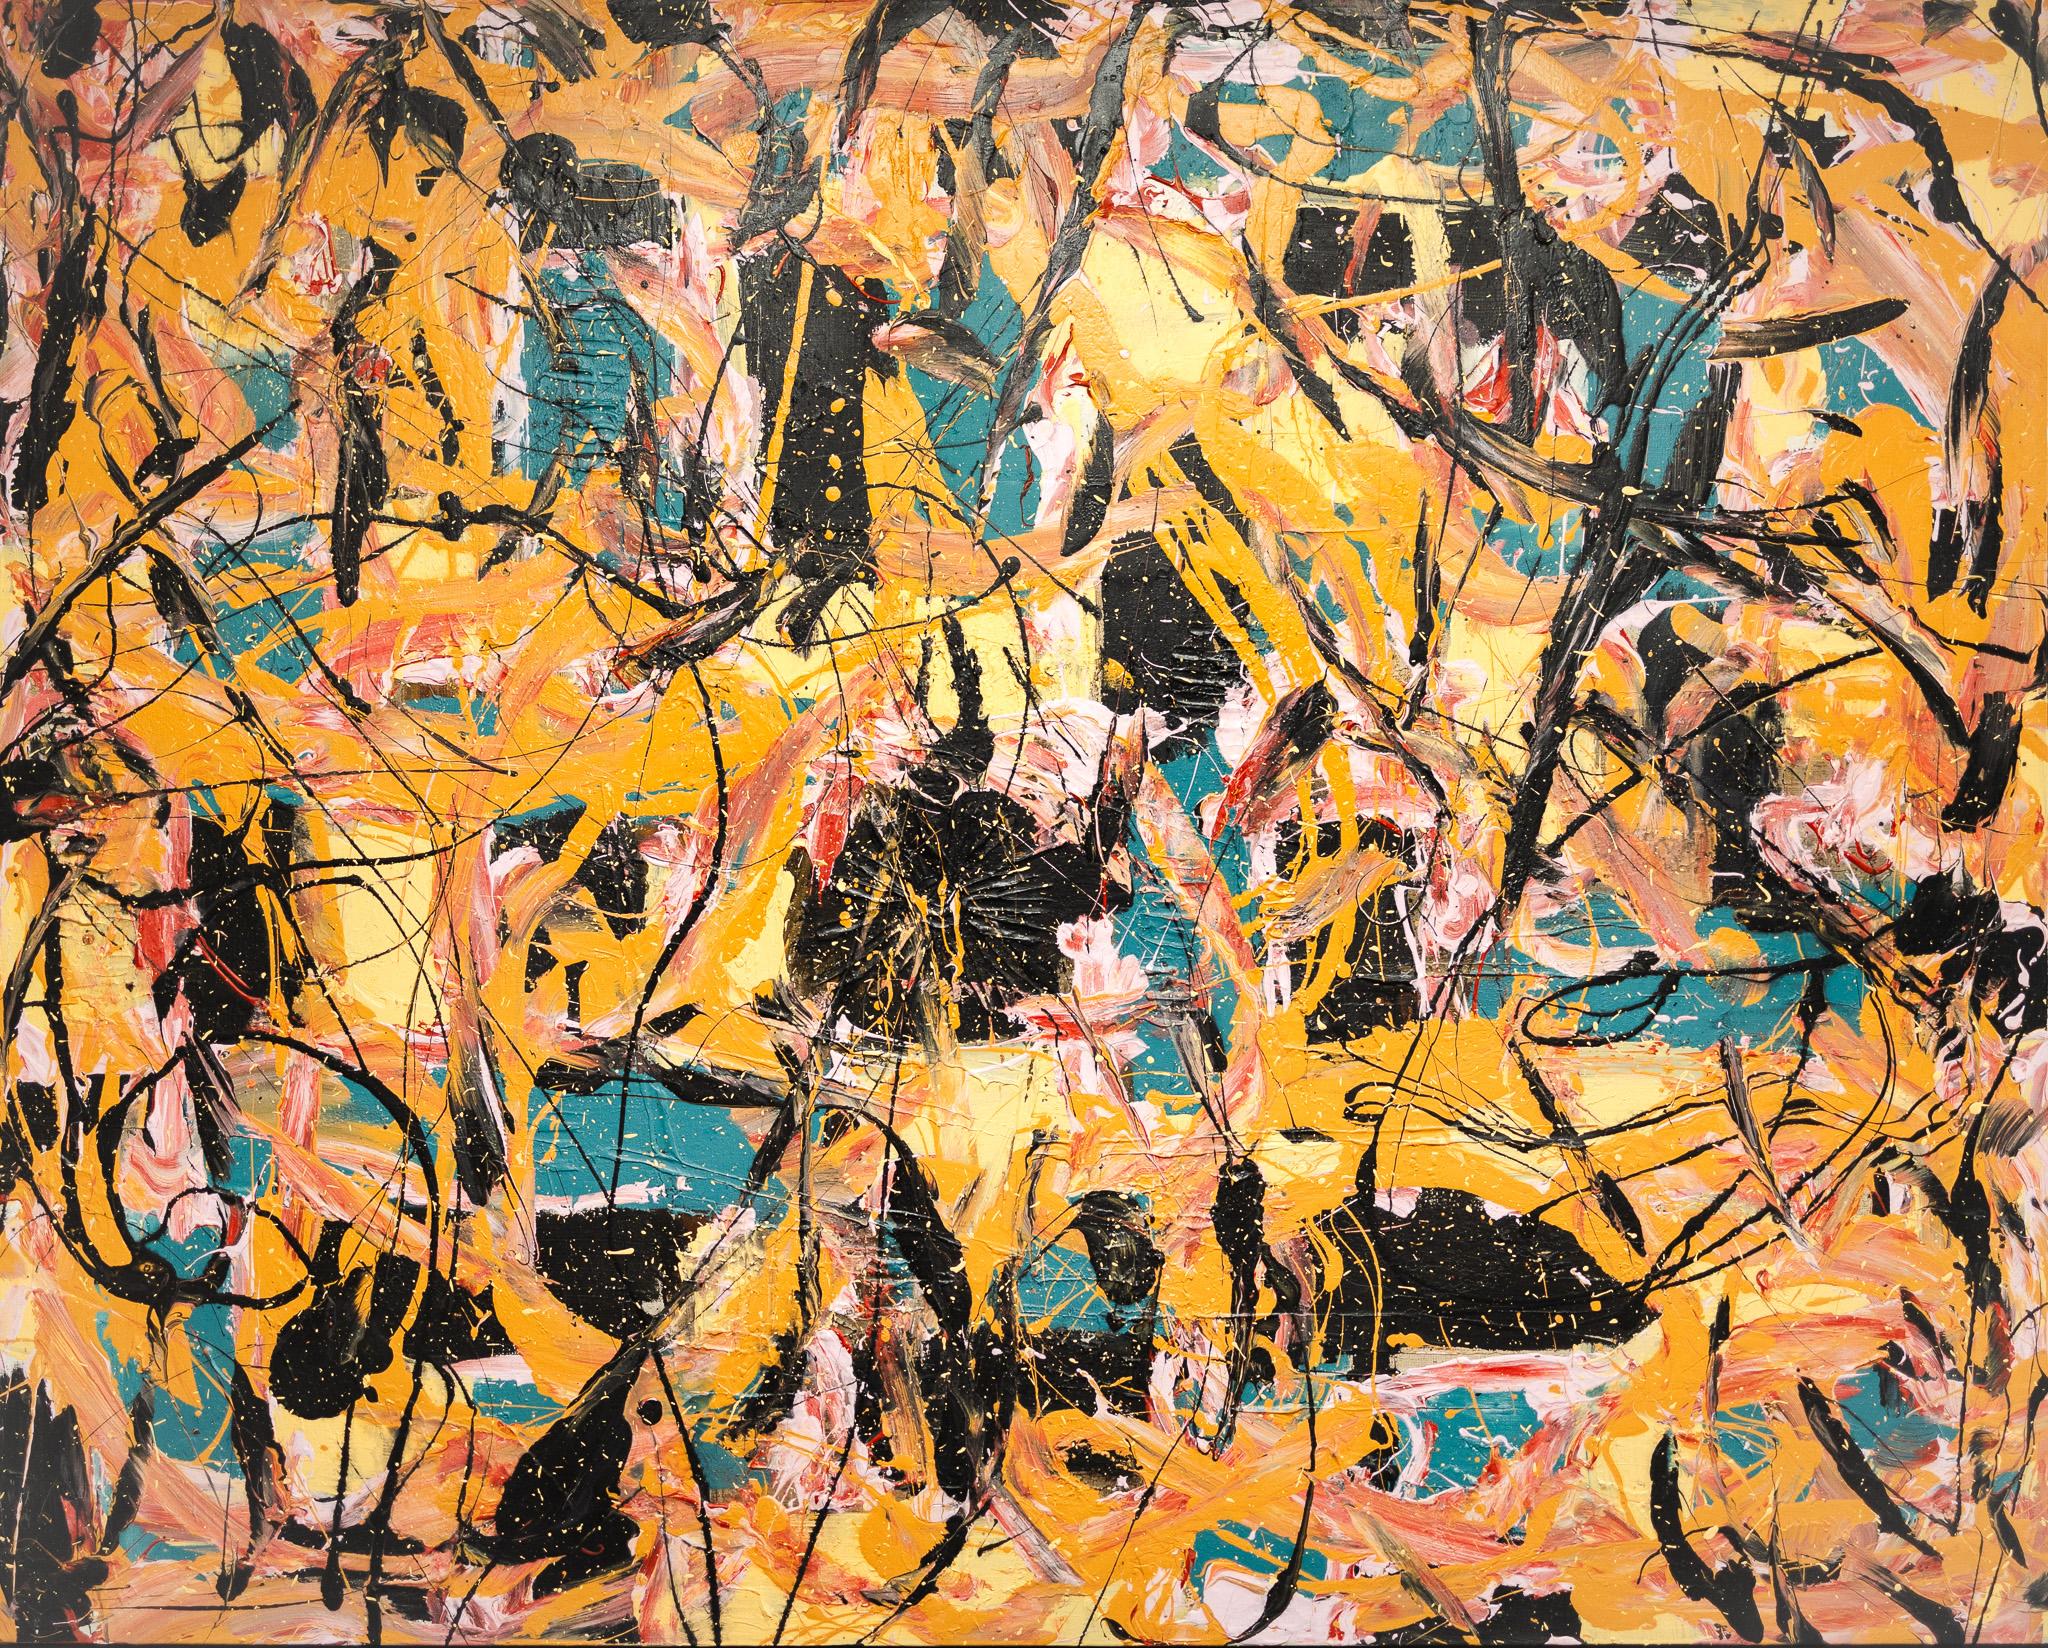 Jack Nichols Abstract Painting – Abstrakt in Schwarz, Gelb, Orange, Rosa und Teal